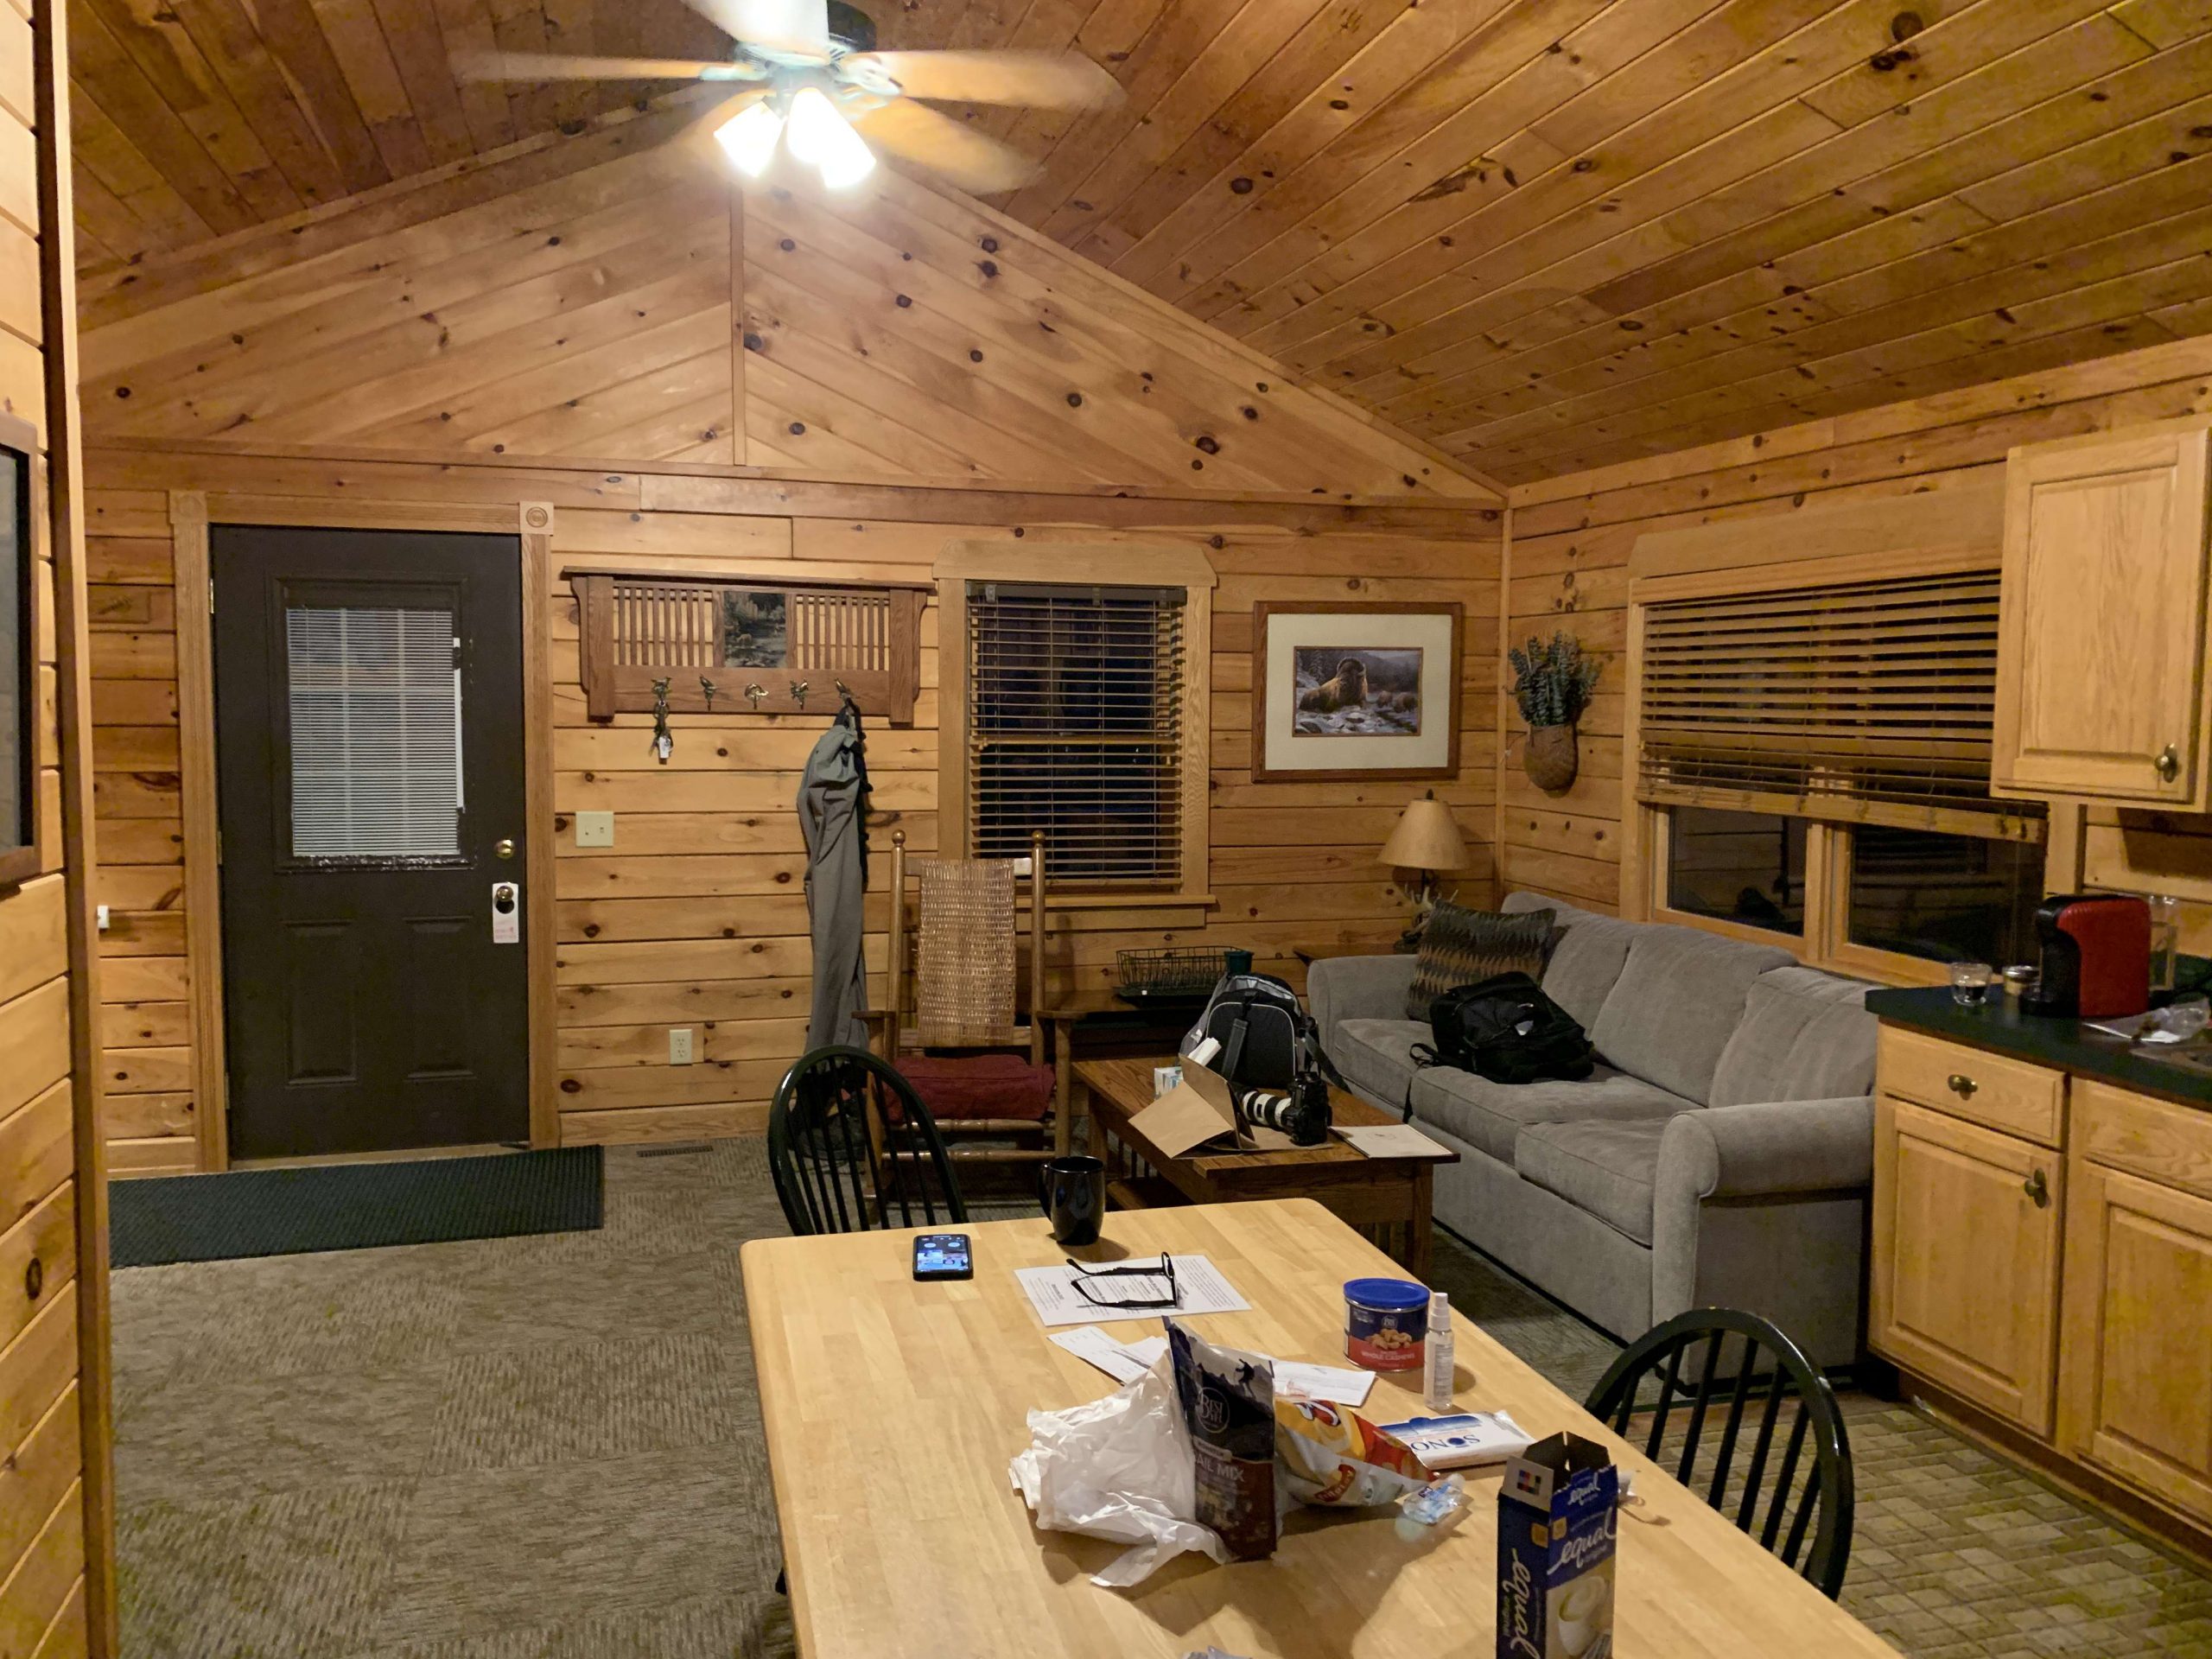 Hereâs the inside of our cabin â¦